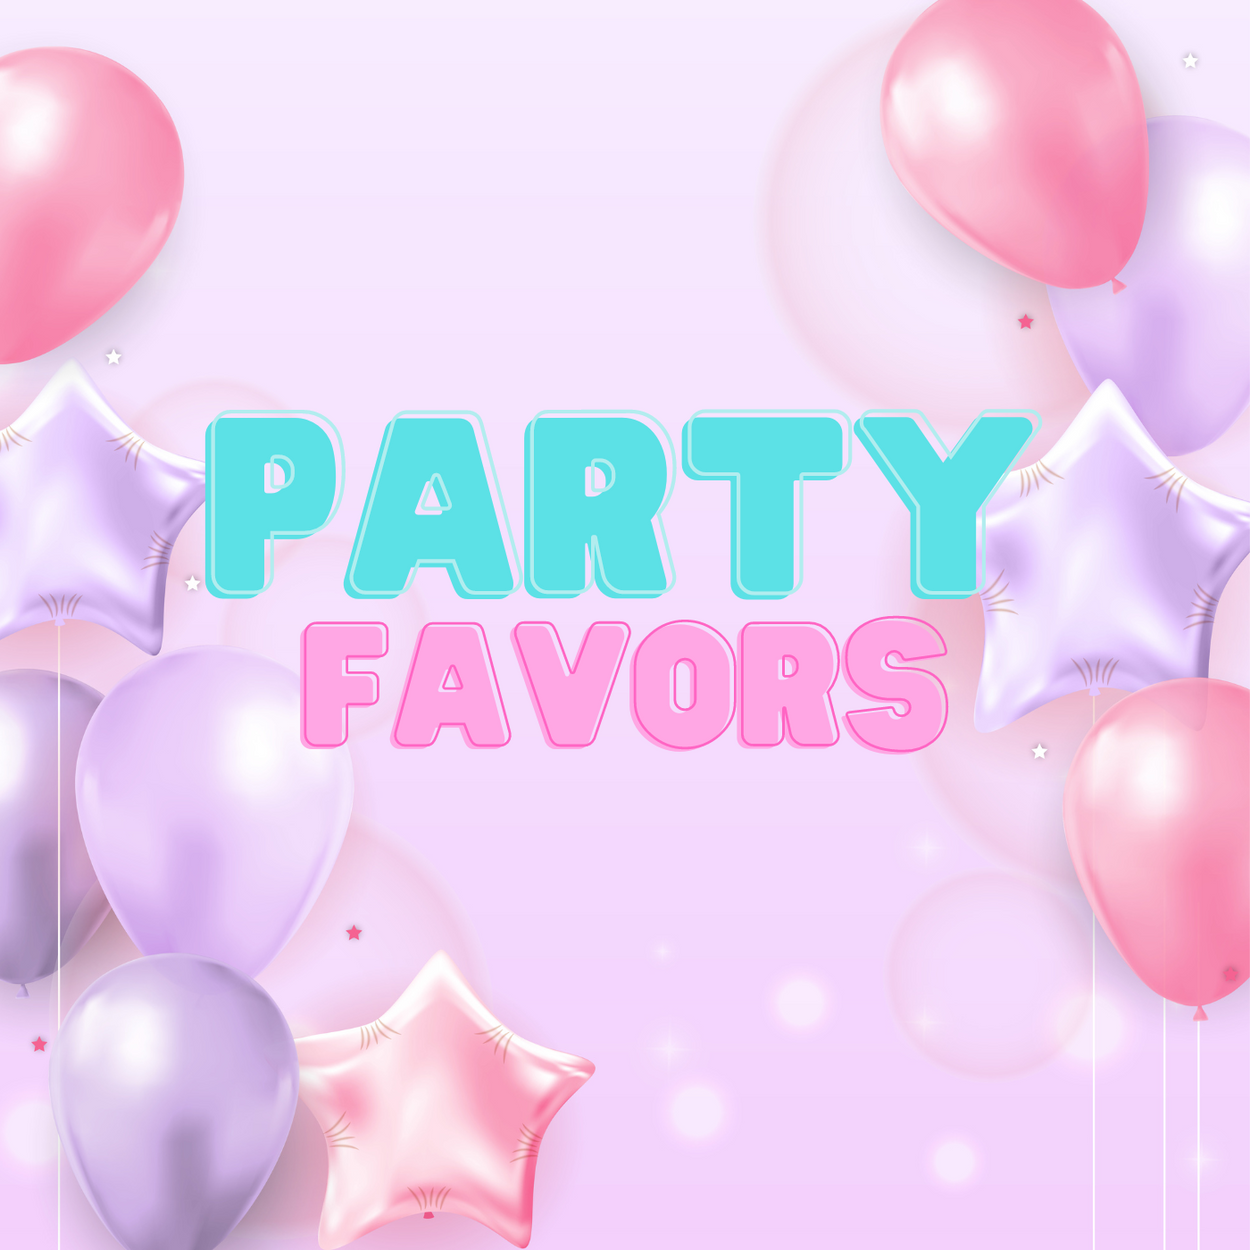 Party Favors